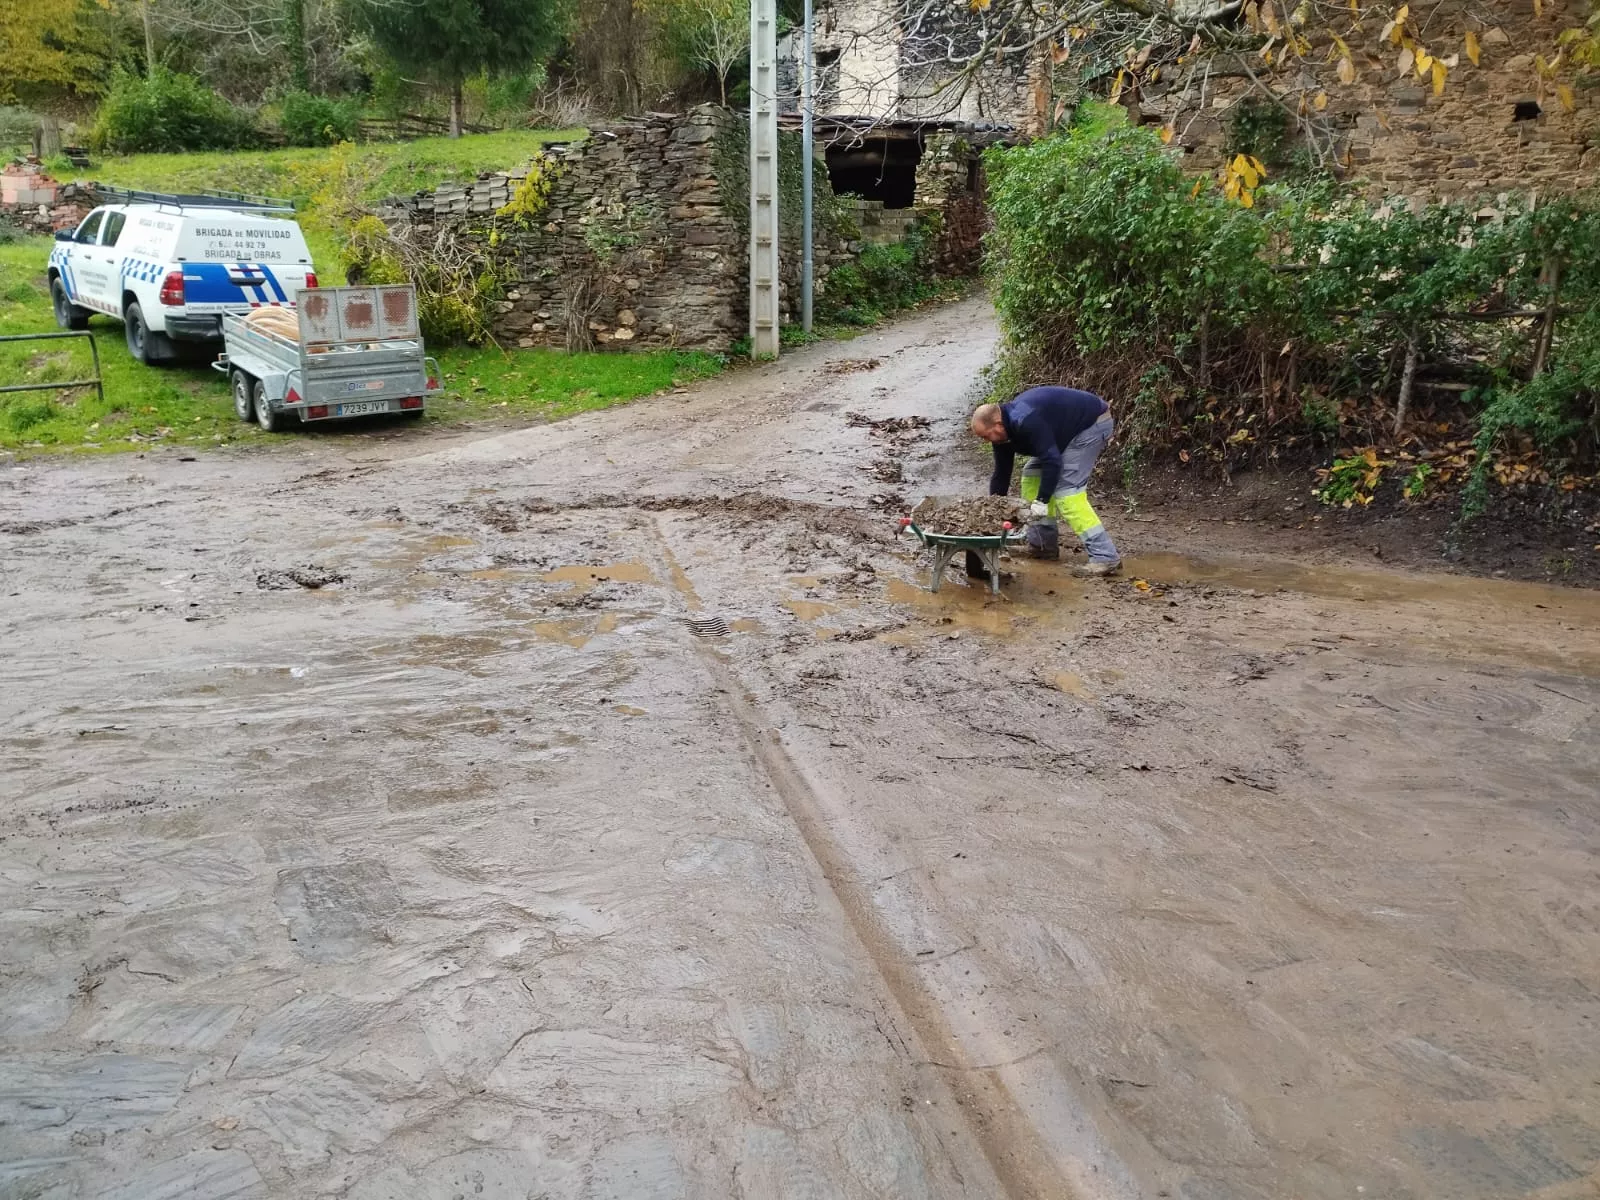 Operarios de la brigada de Medio Rural limpian las calles de Valdecañada afectadas por el temporal